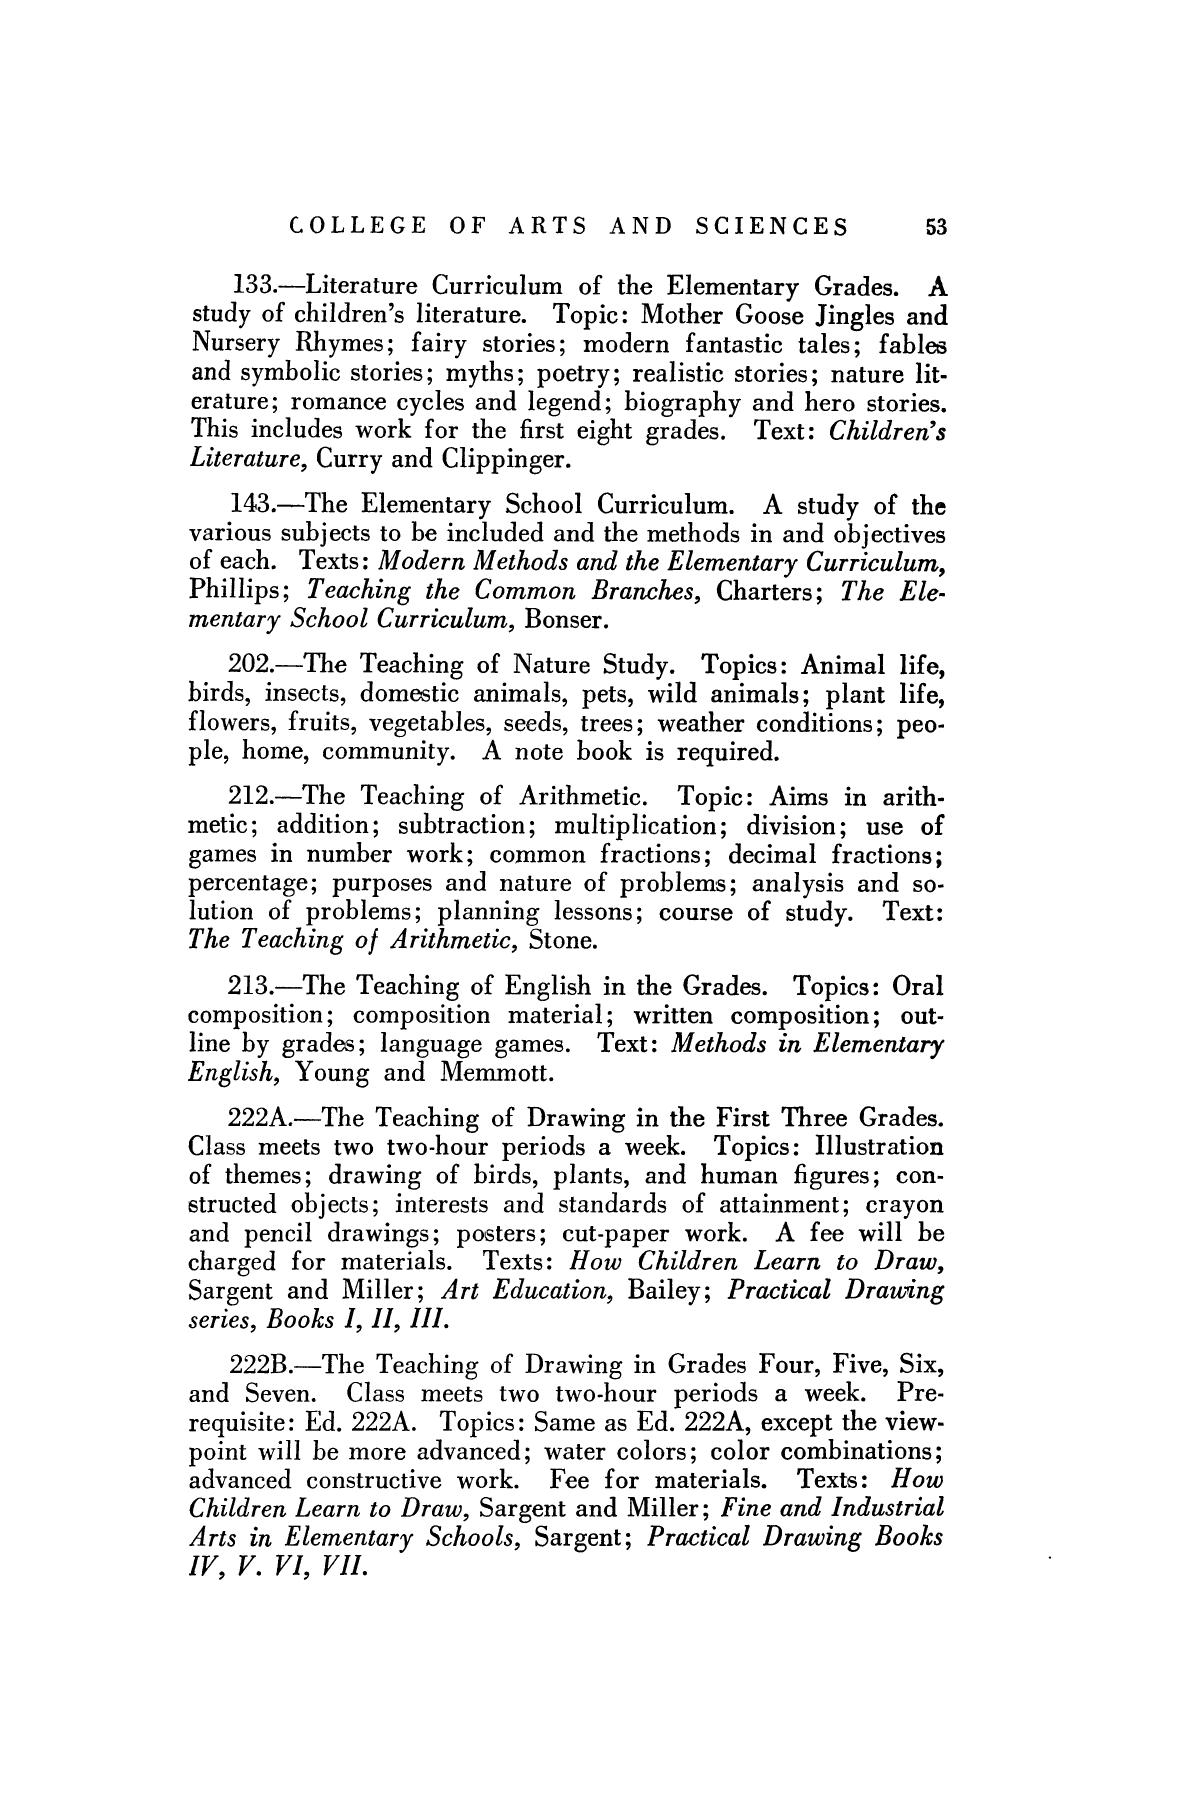 Catalog of Abilene Christian College, 1925-1926
                                                
                                                    53
                                                